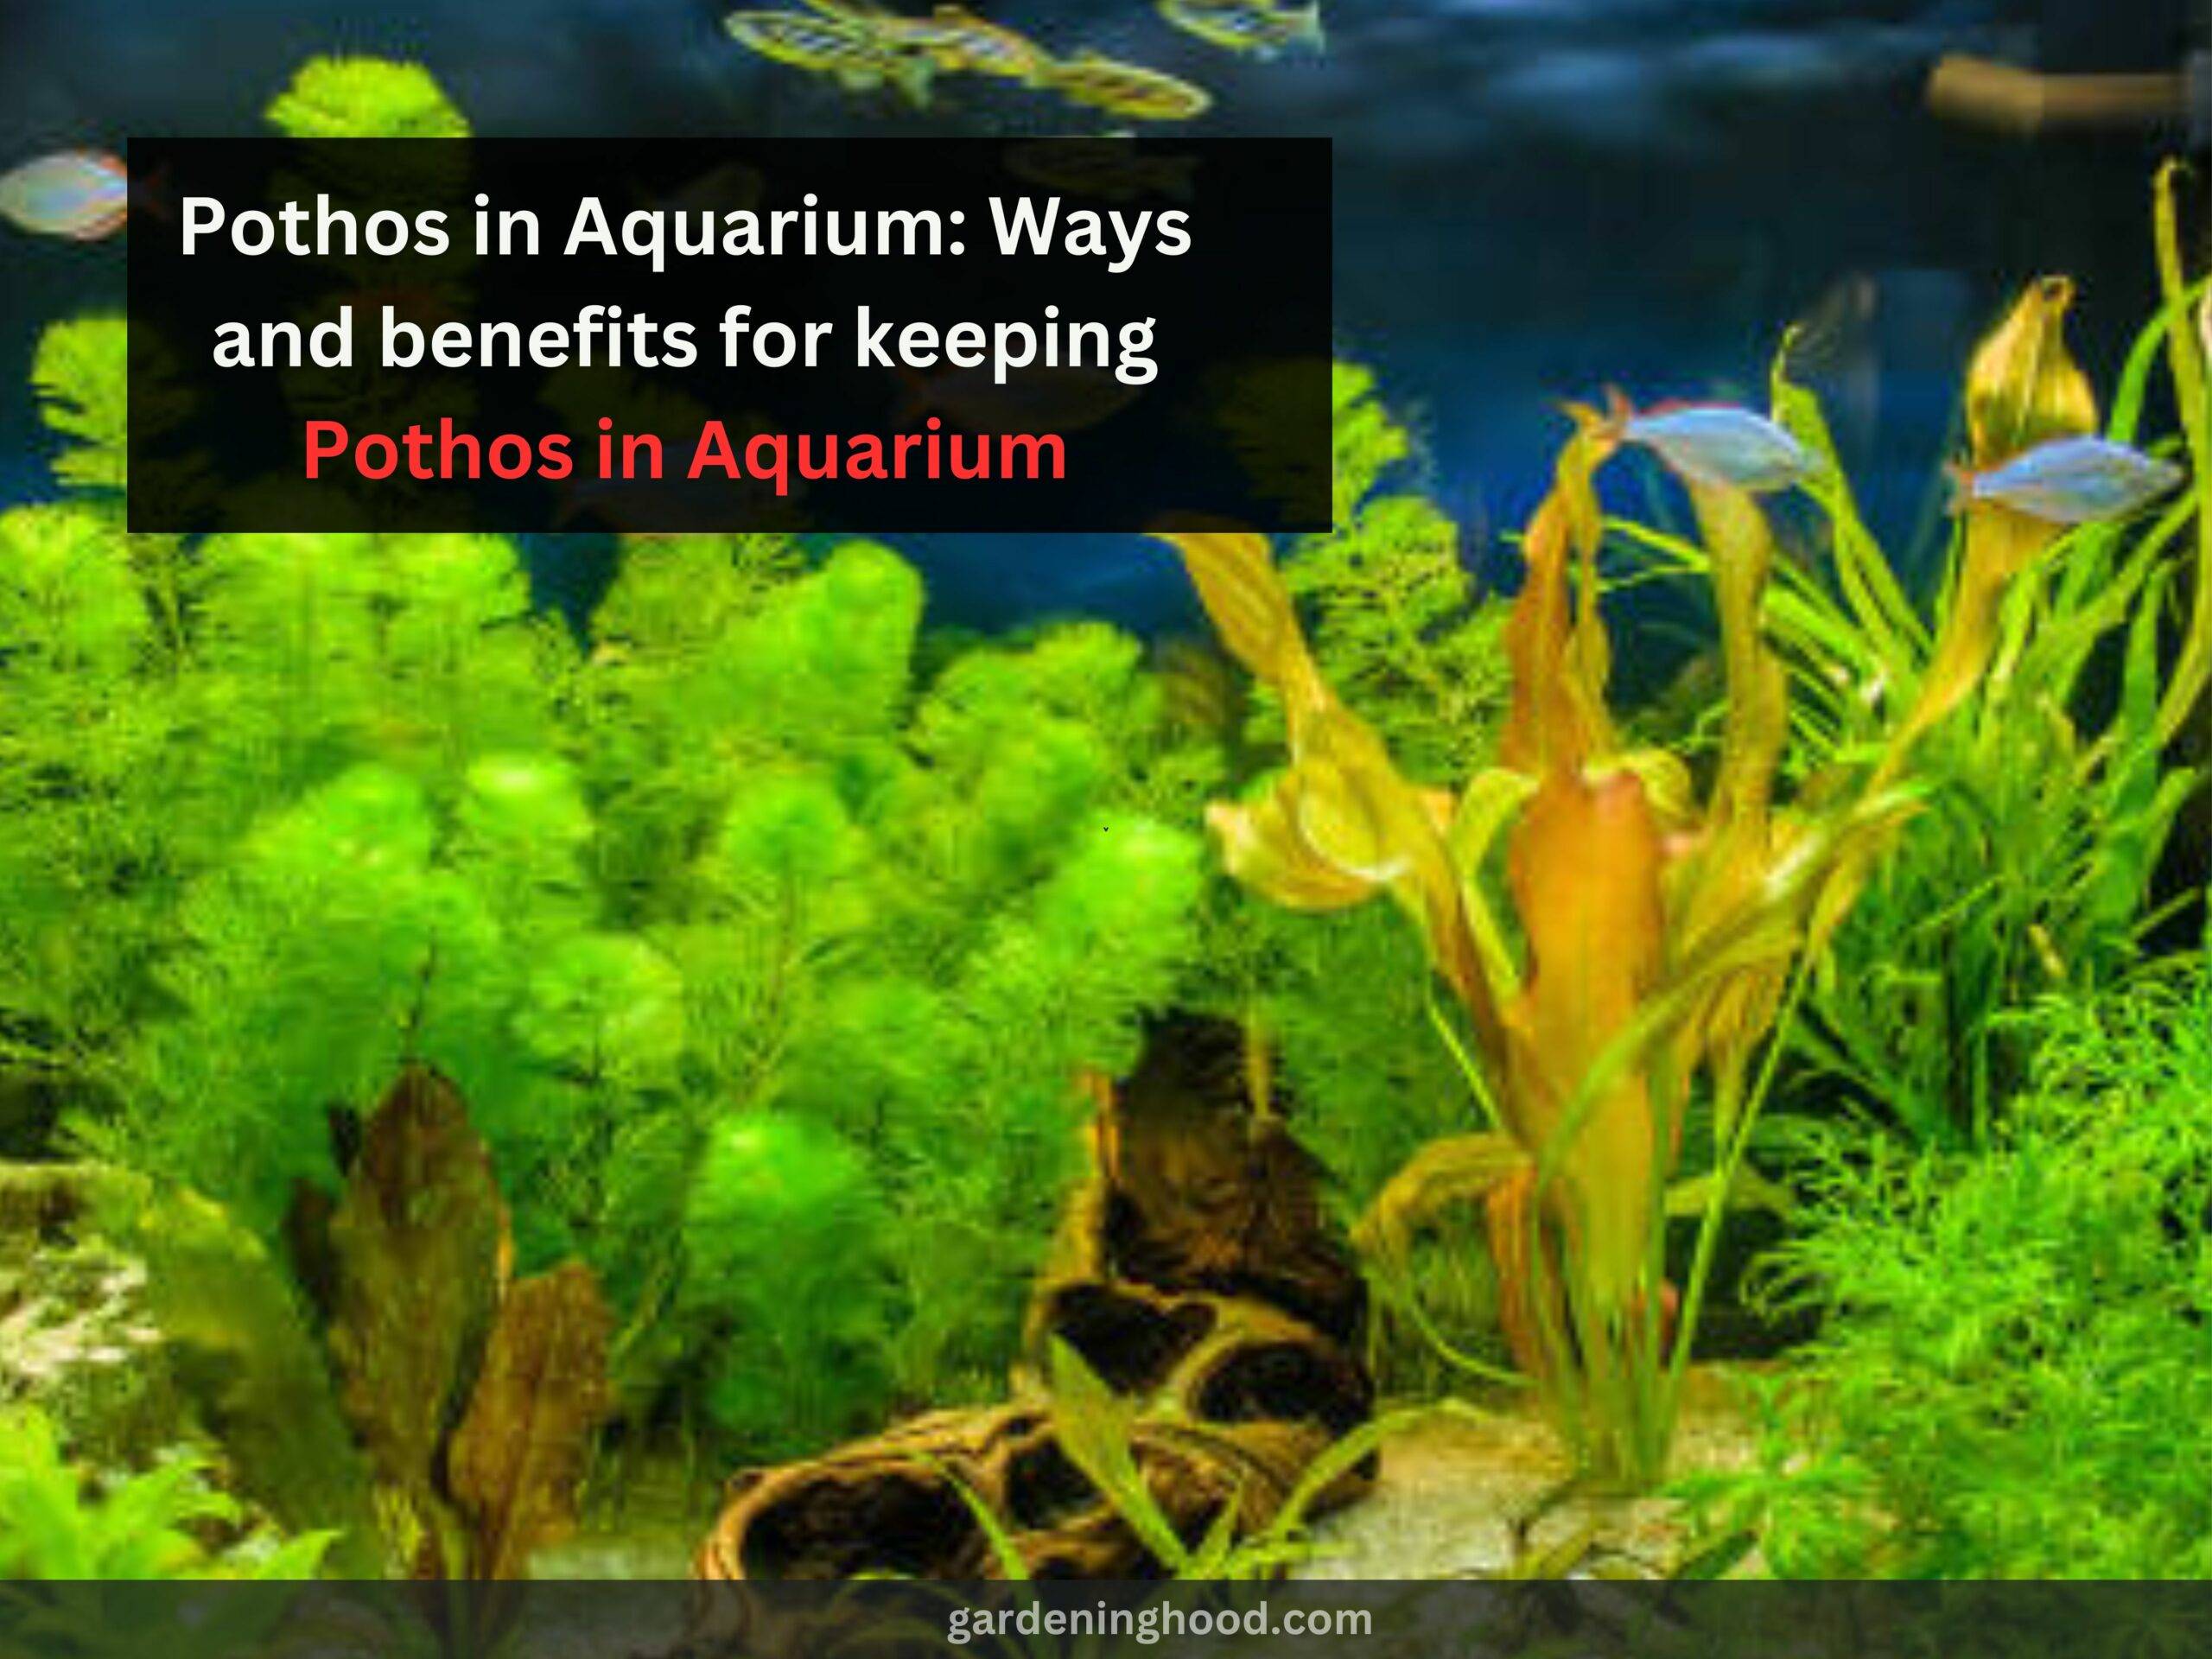 Pothos in Aquarium: Ways and benefits for keeping Pothos in Aquarium